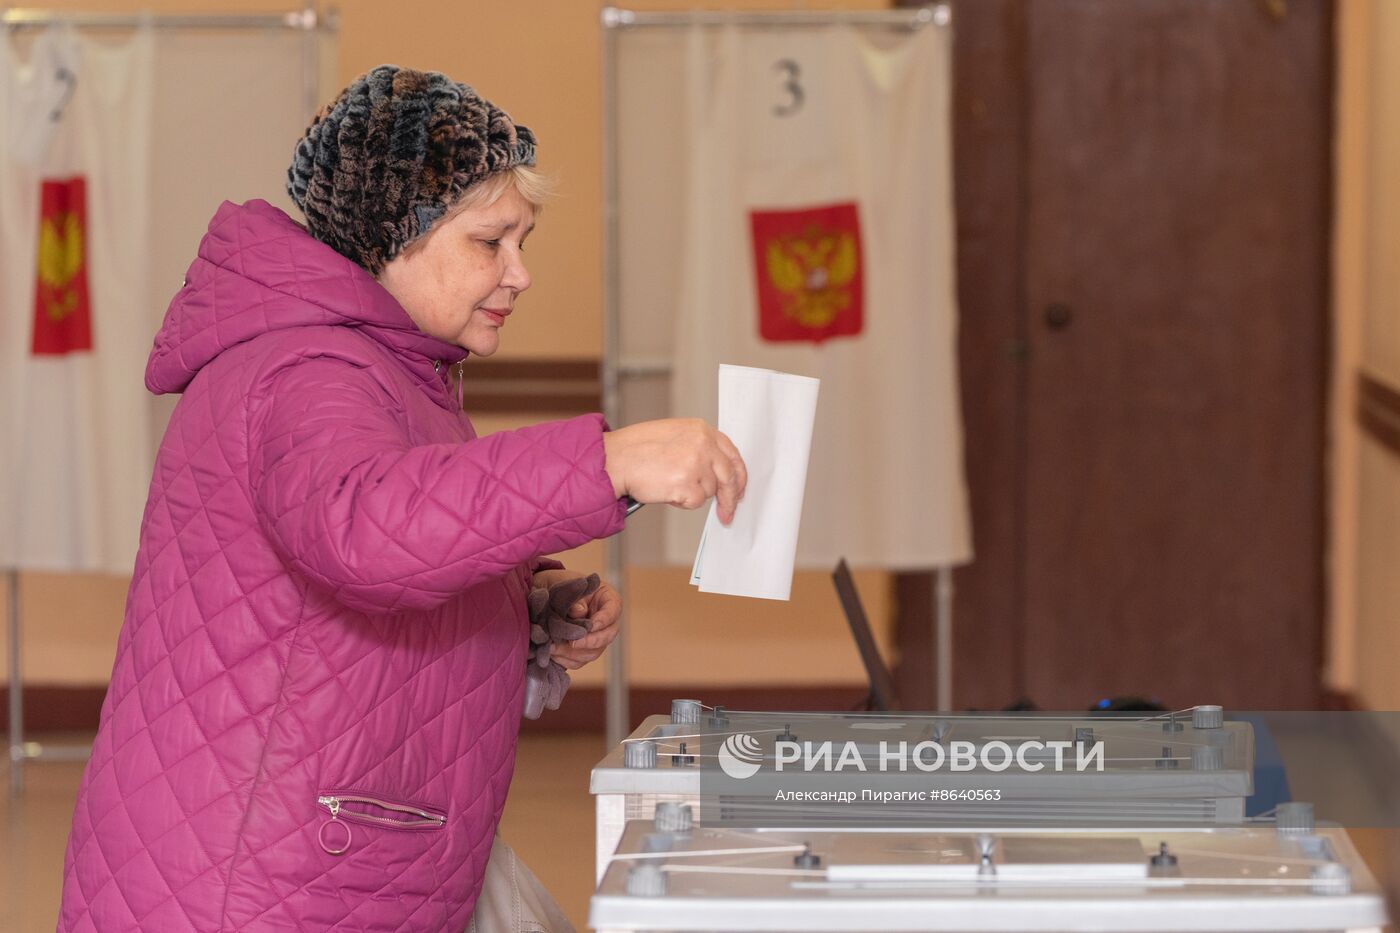 Выборы президента России в регионах 